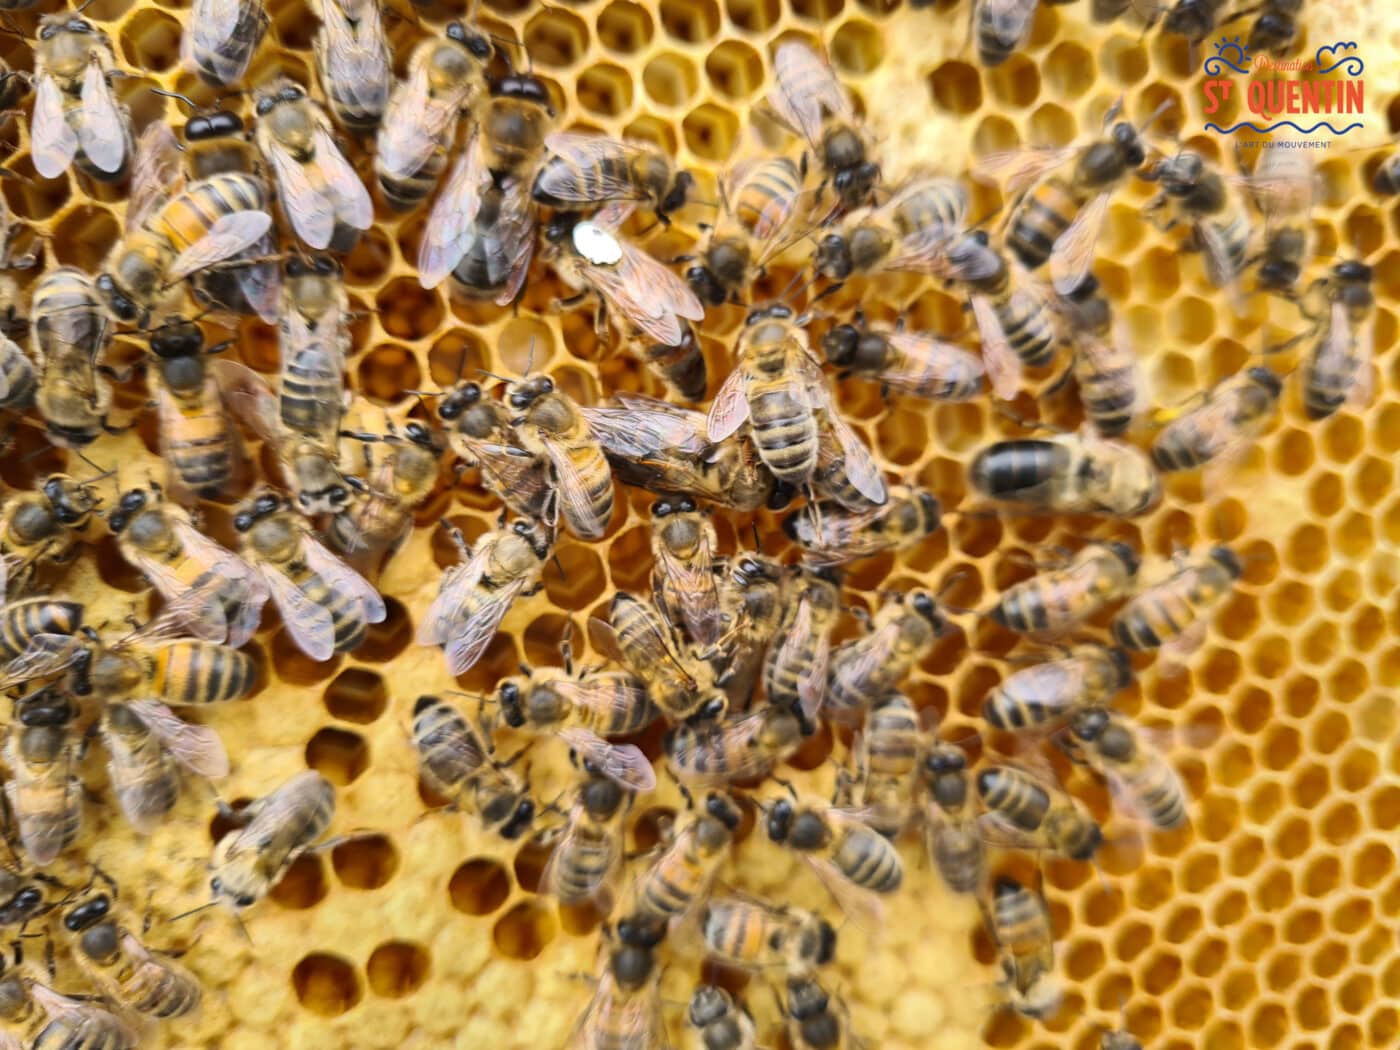 ambassadeur les abeilles de francilly 14 - Office de tourisme du Saint-Quentinois